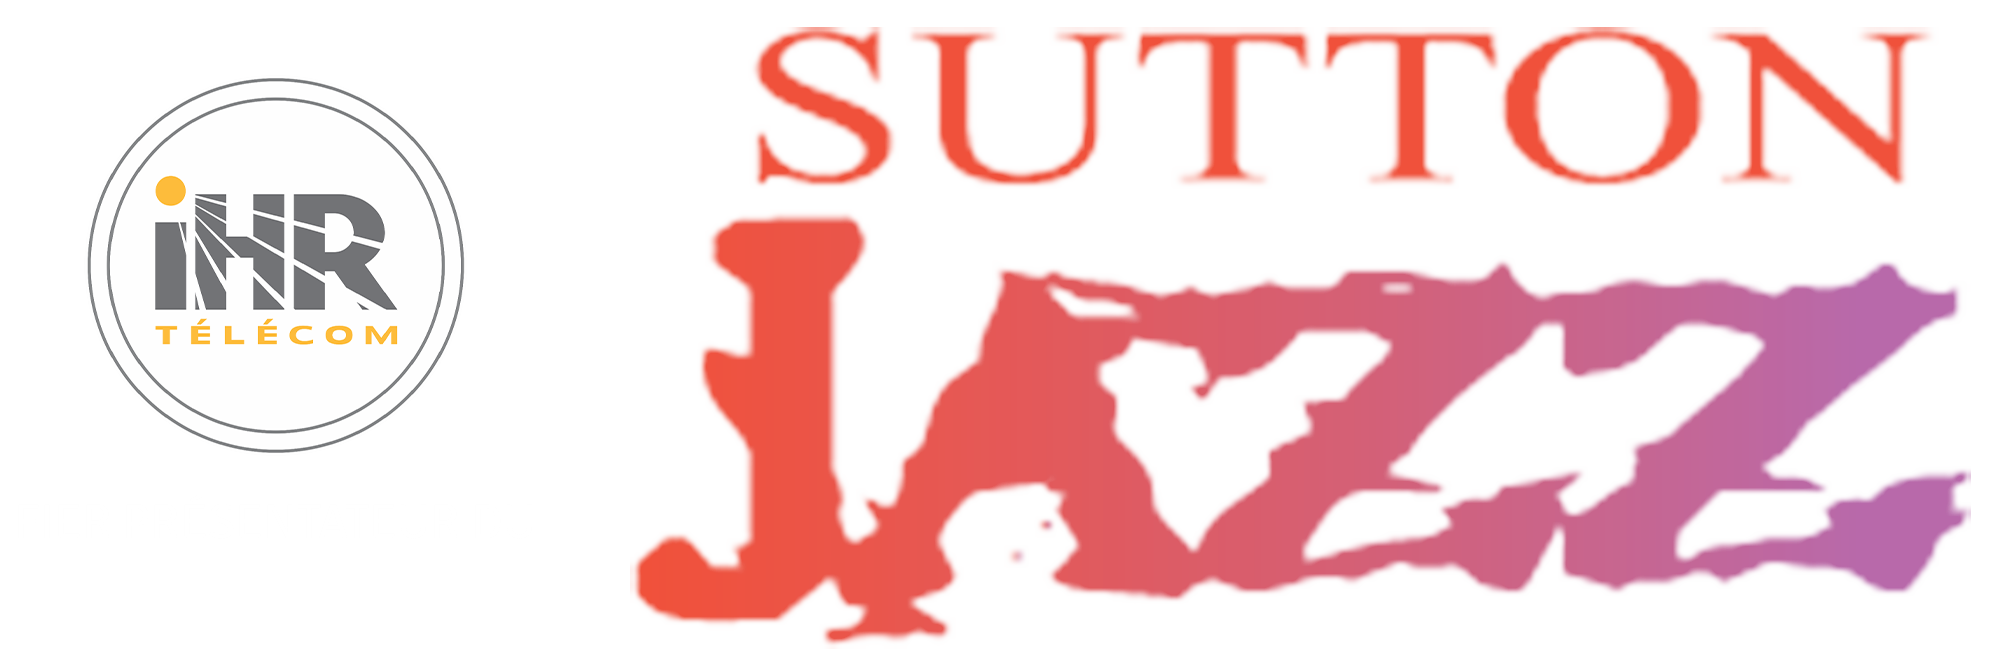 logo-sutton-jazz-avec-ihr-copy-paysage3crop